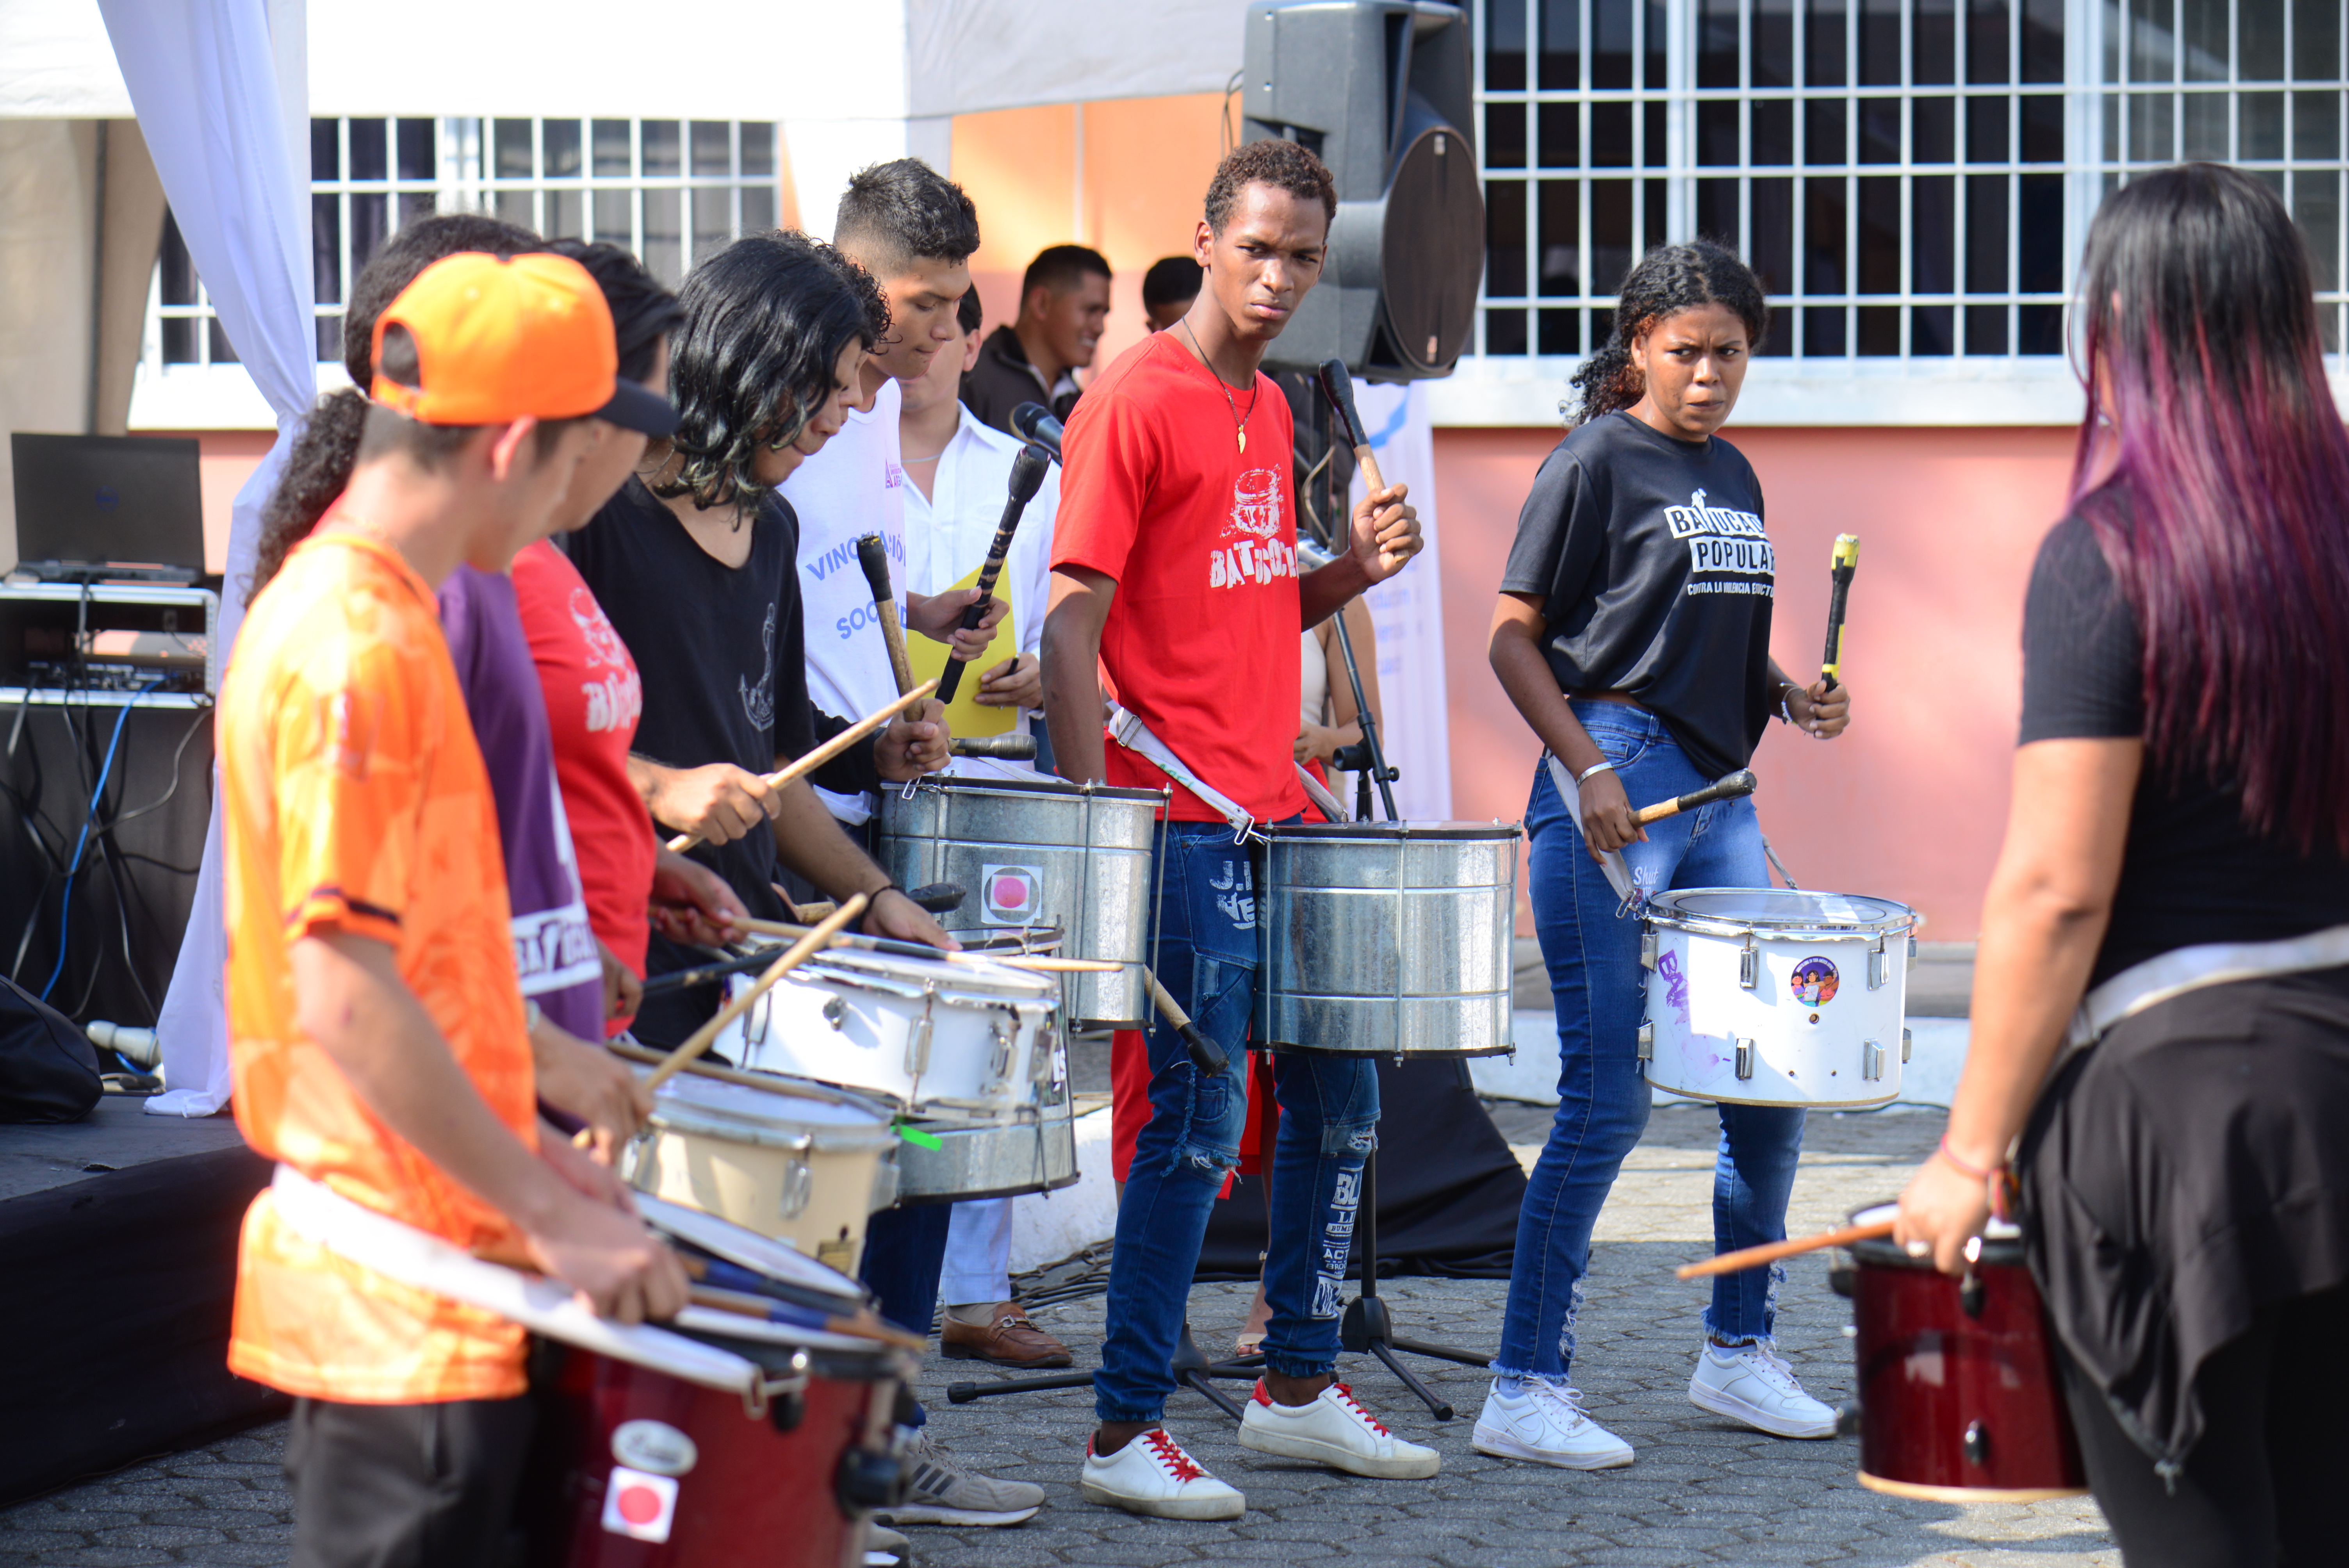 Organización “Batucada Popular de Guayaquil”. Fotografía: Proyecto Construimos Paz 